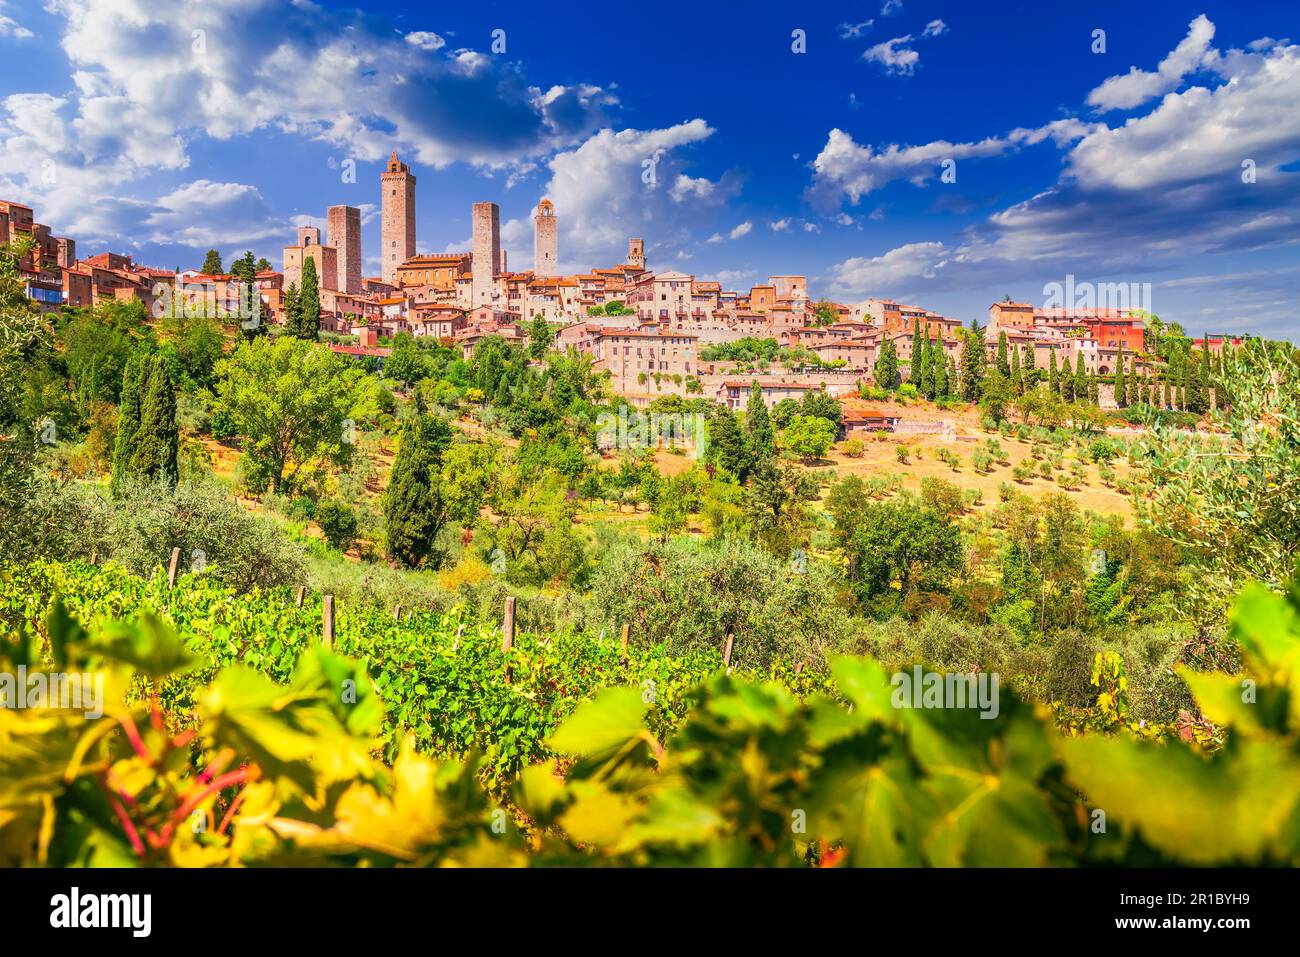 San Gimignano, Italie. Horizon de la ville médiévale et célèbres tours ensoleillées. Vignoble italien en premier plan. Toscane un des endroits célèbres de l'Europe. Banque D'Images